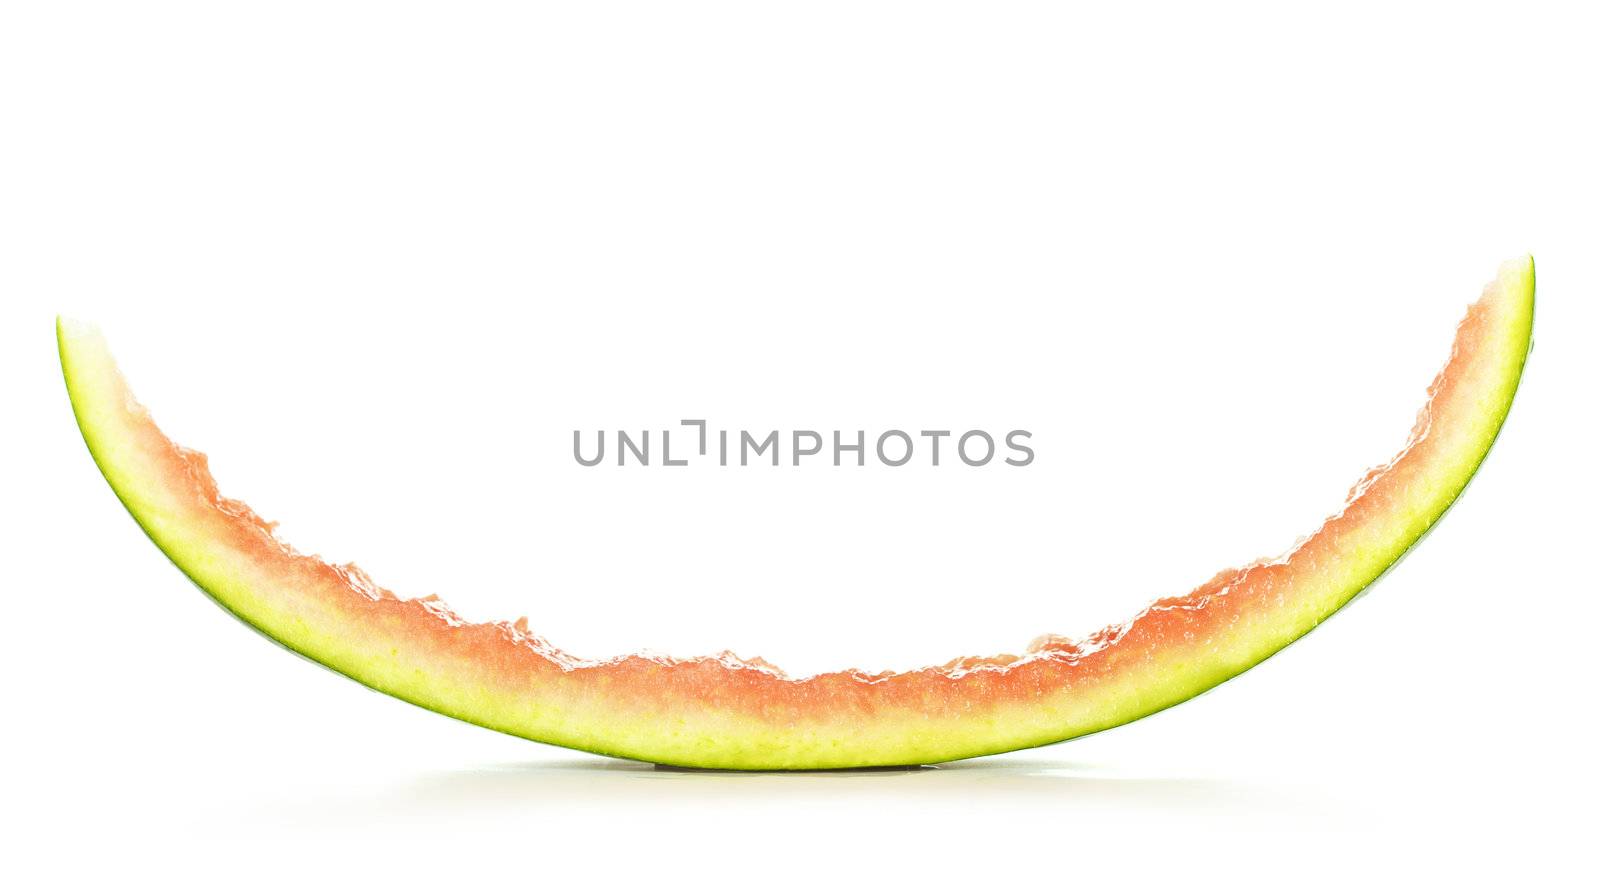 Peel of Watermelon by petr_malyshev